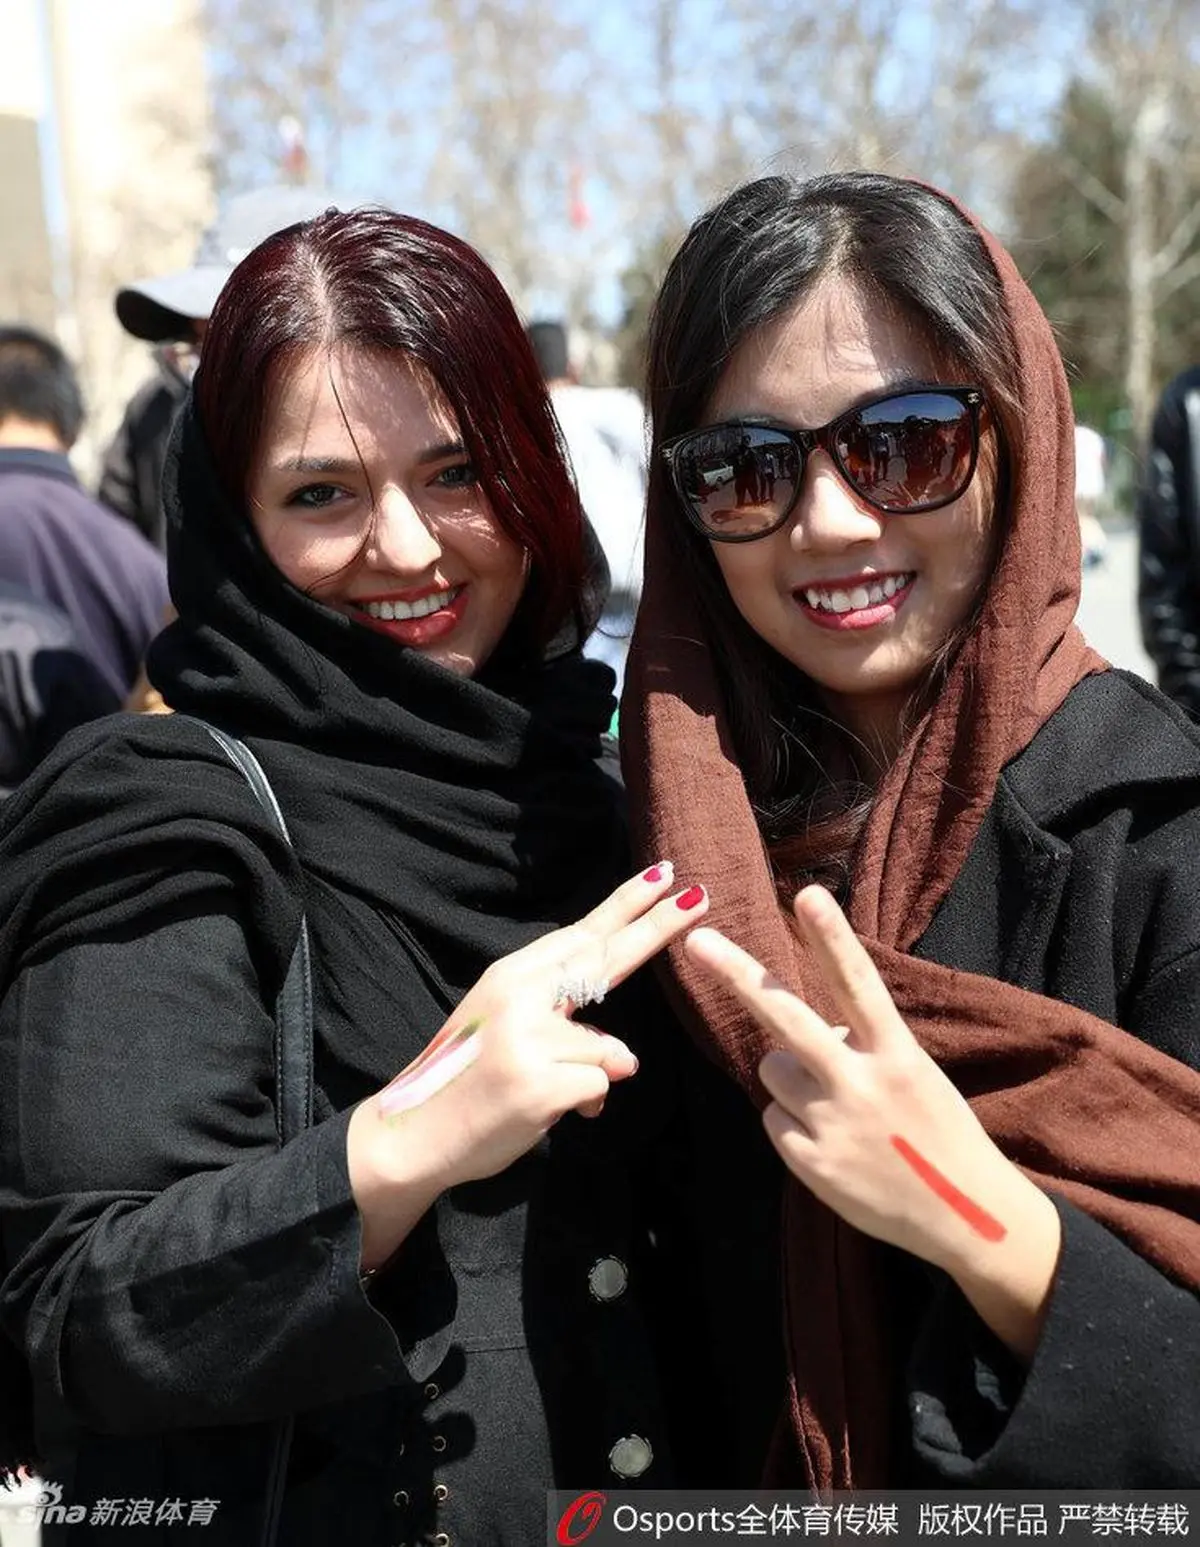  دختران ایرانی در استادیوم آزادی در بازی ایران و چین +تصاویر